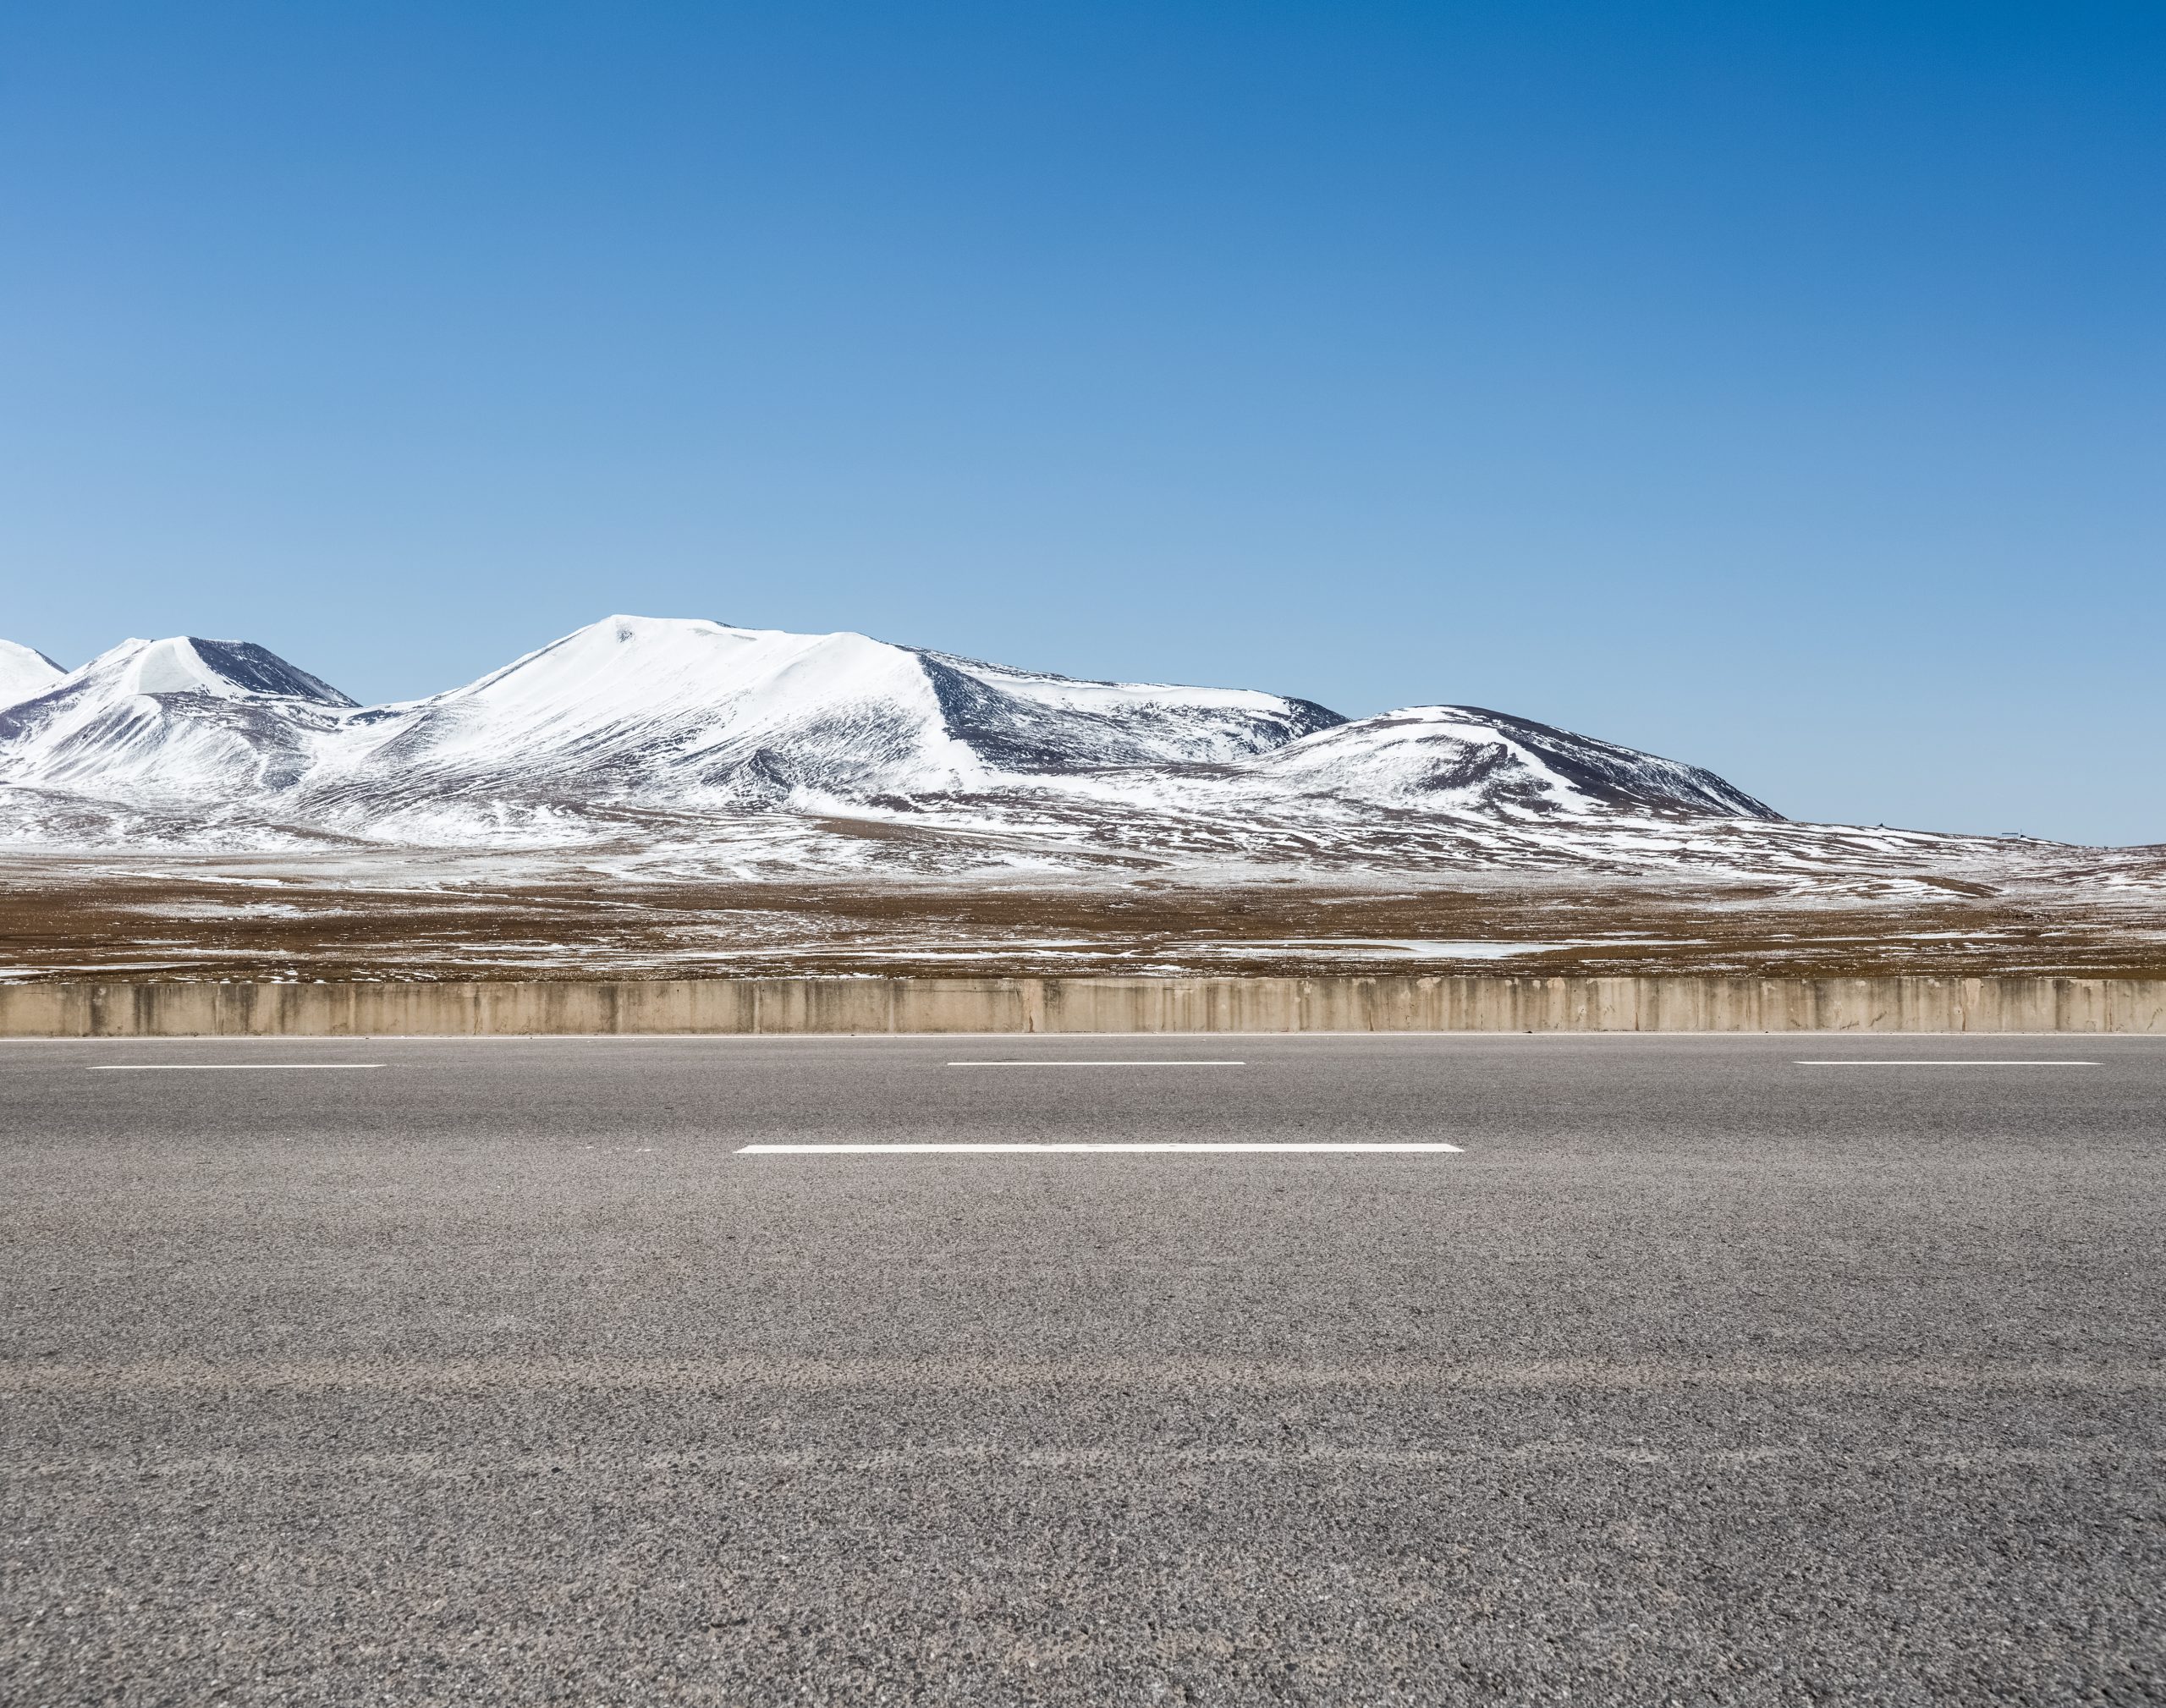 empty asphalt road on snow area plateau